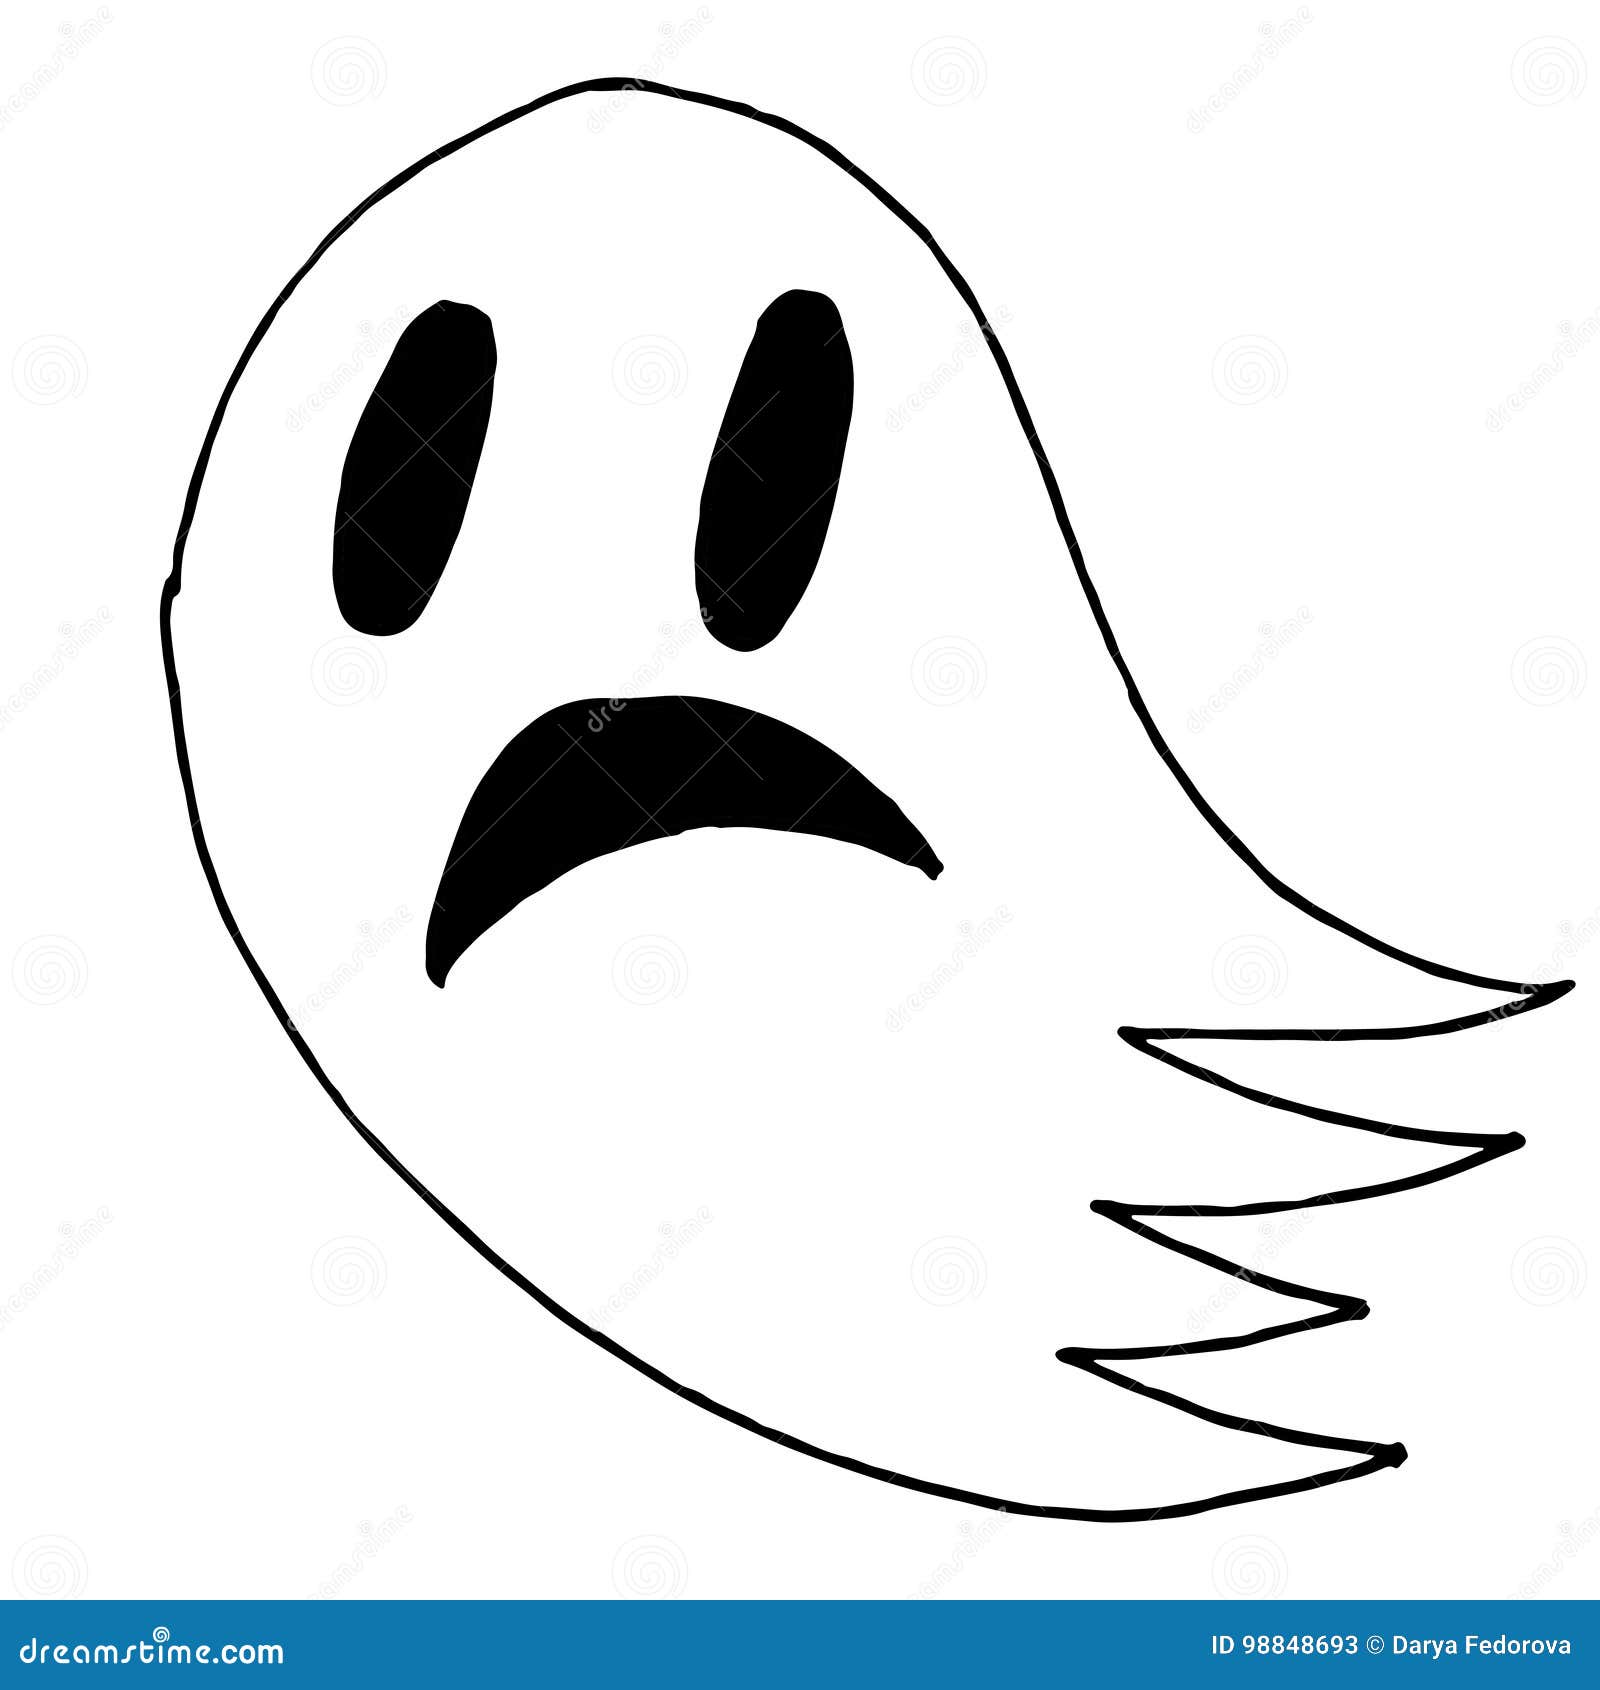 Um desenho animado de um fantasma com uma cara assustadora.